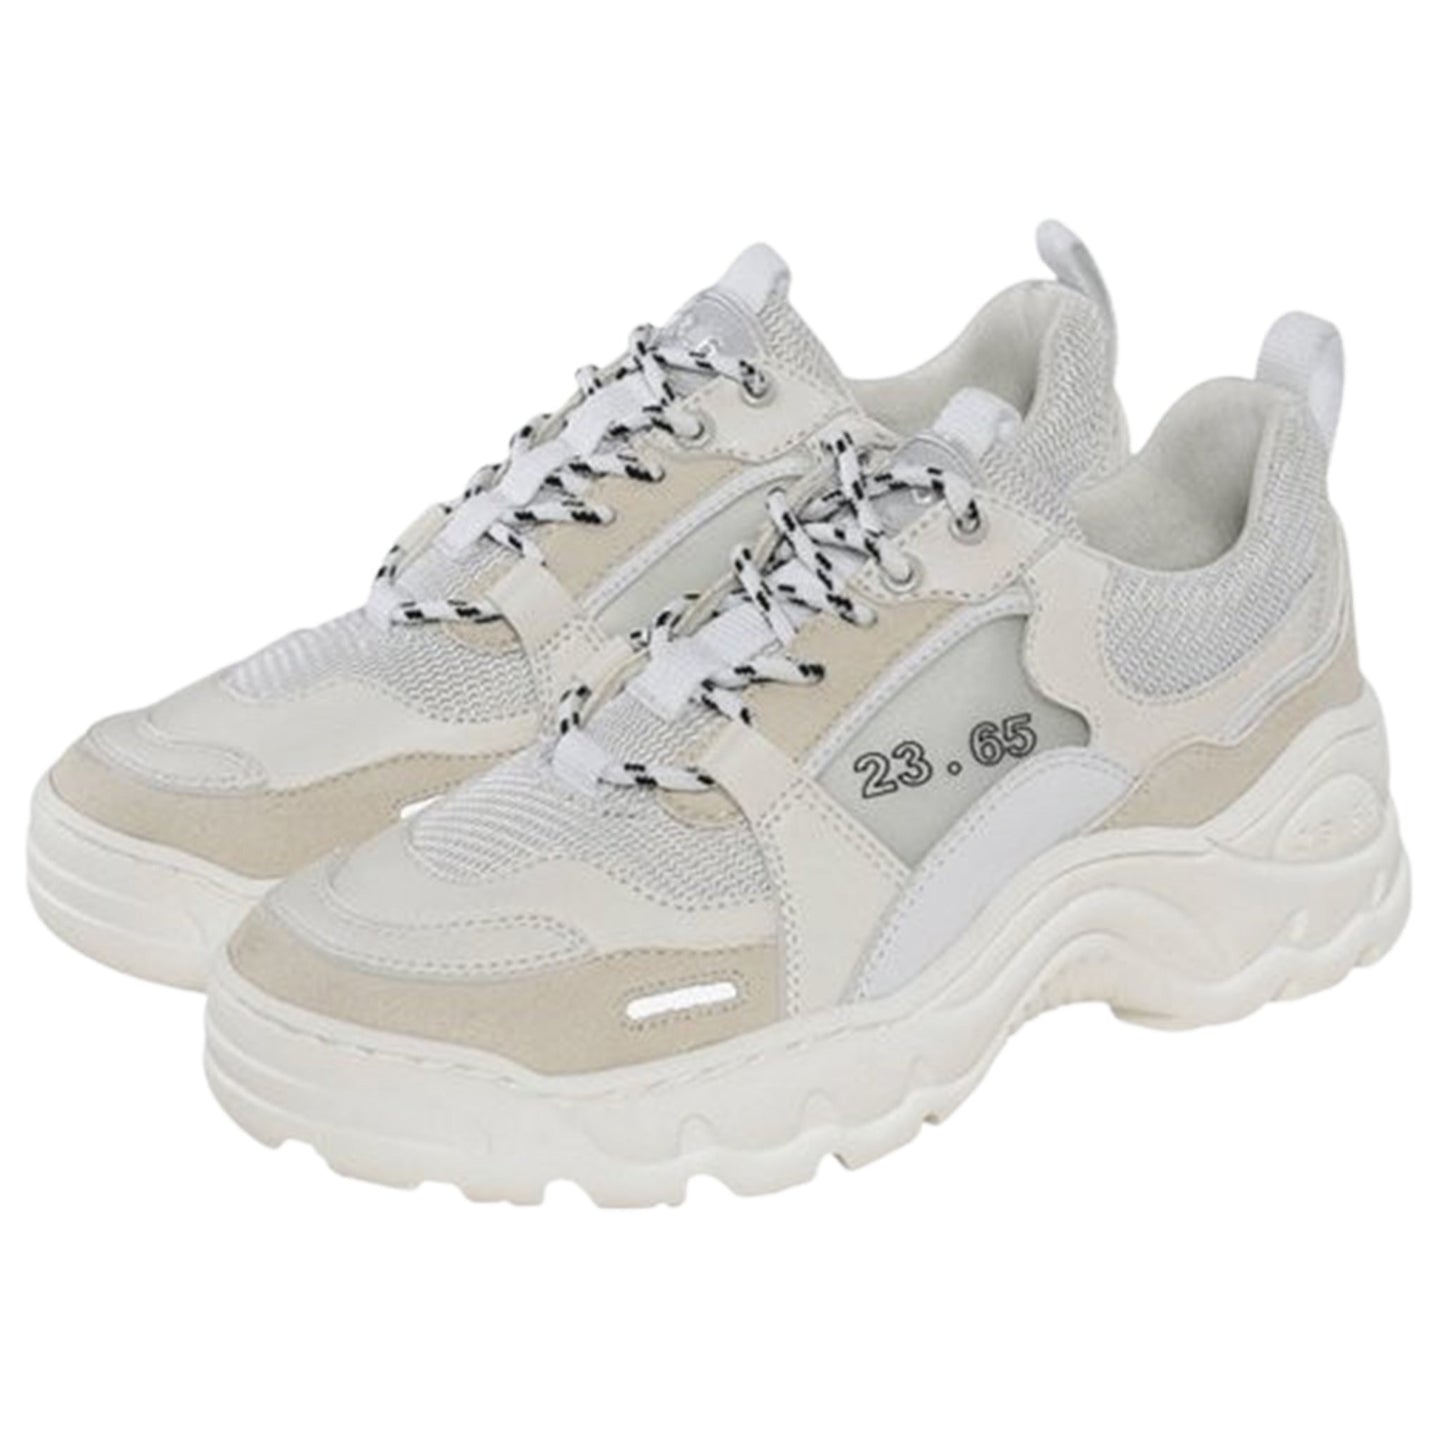 23.65 V2 Sneakers White